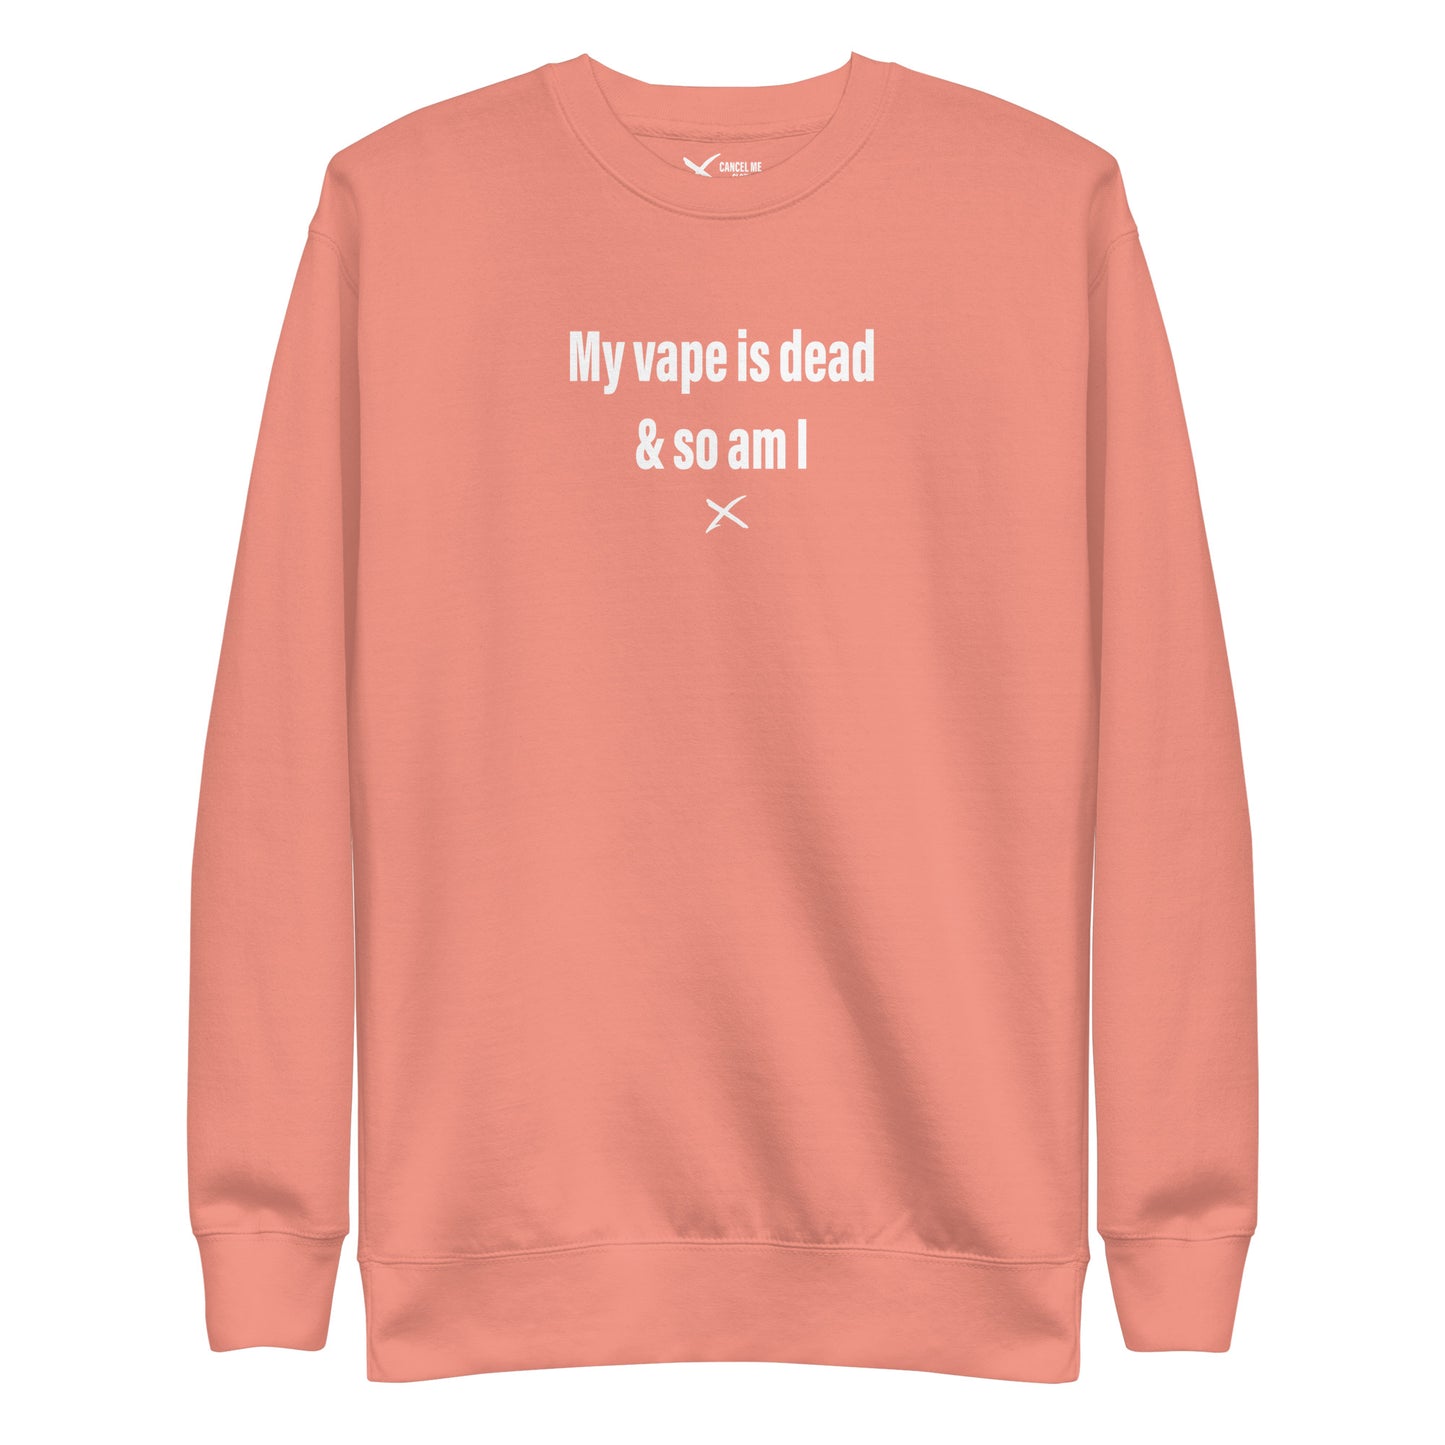 My vape is dead & so am I - Sweatshirt